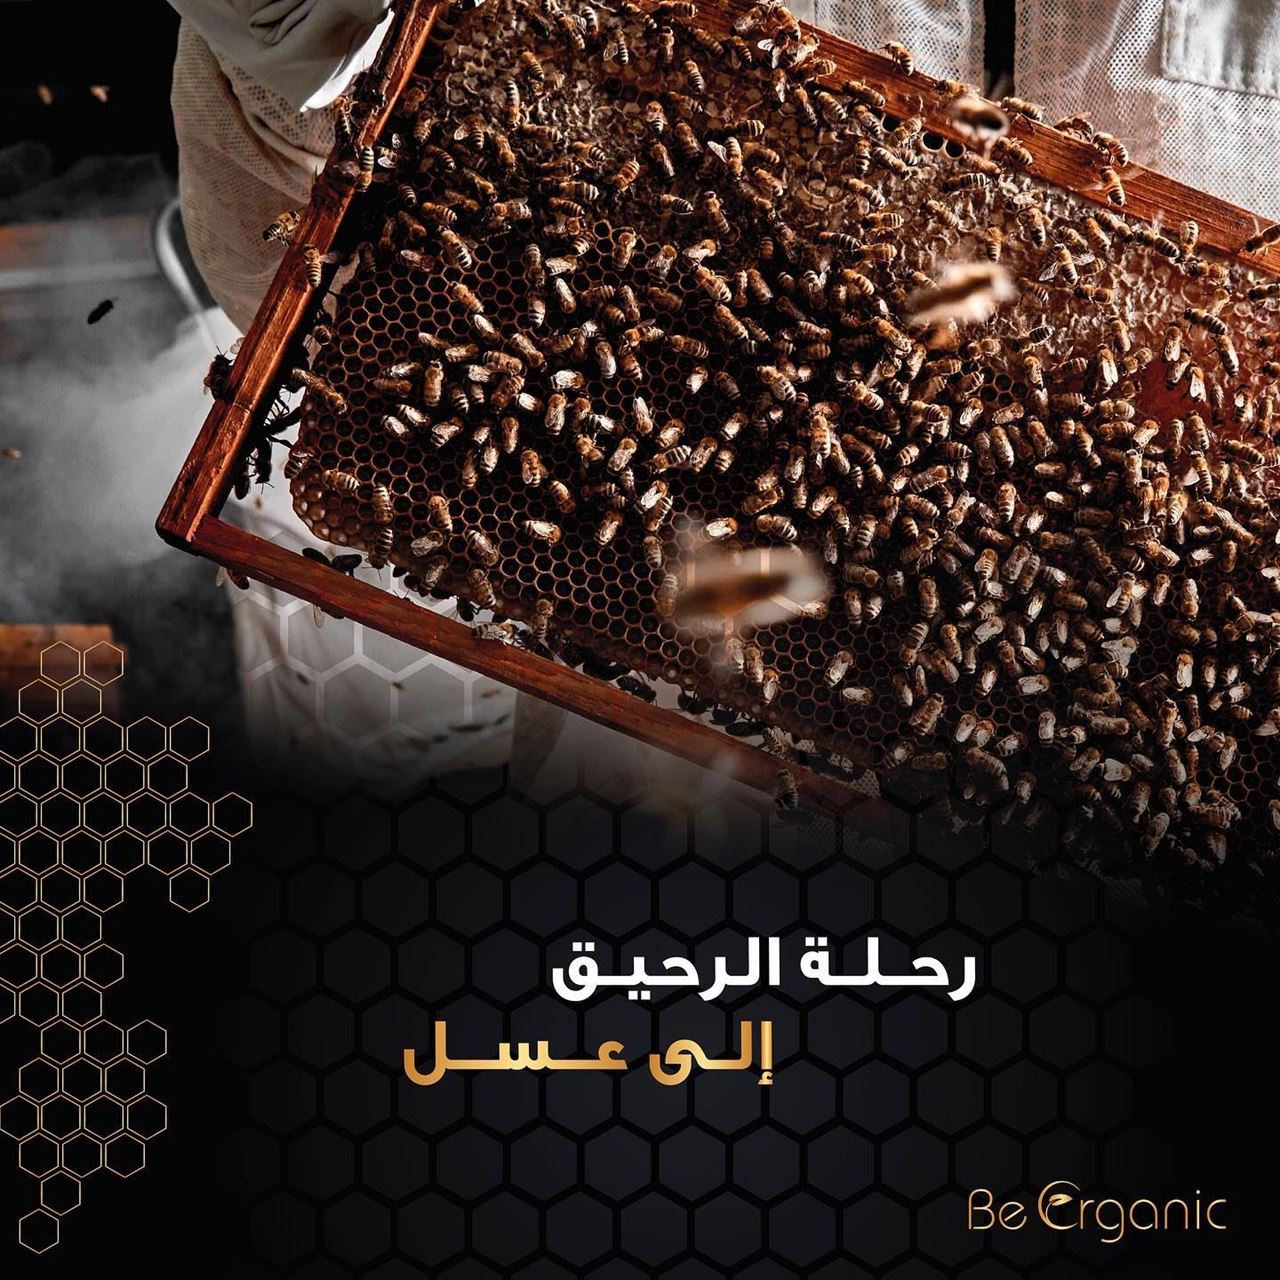 تعرف على تفاصيل رحلة النحل من الرحيق الى العسل